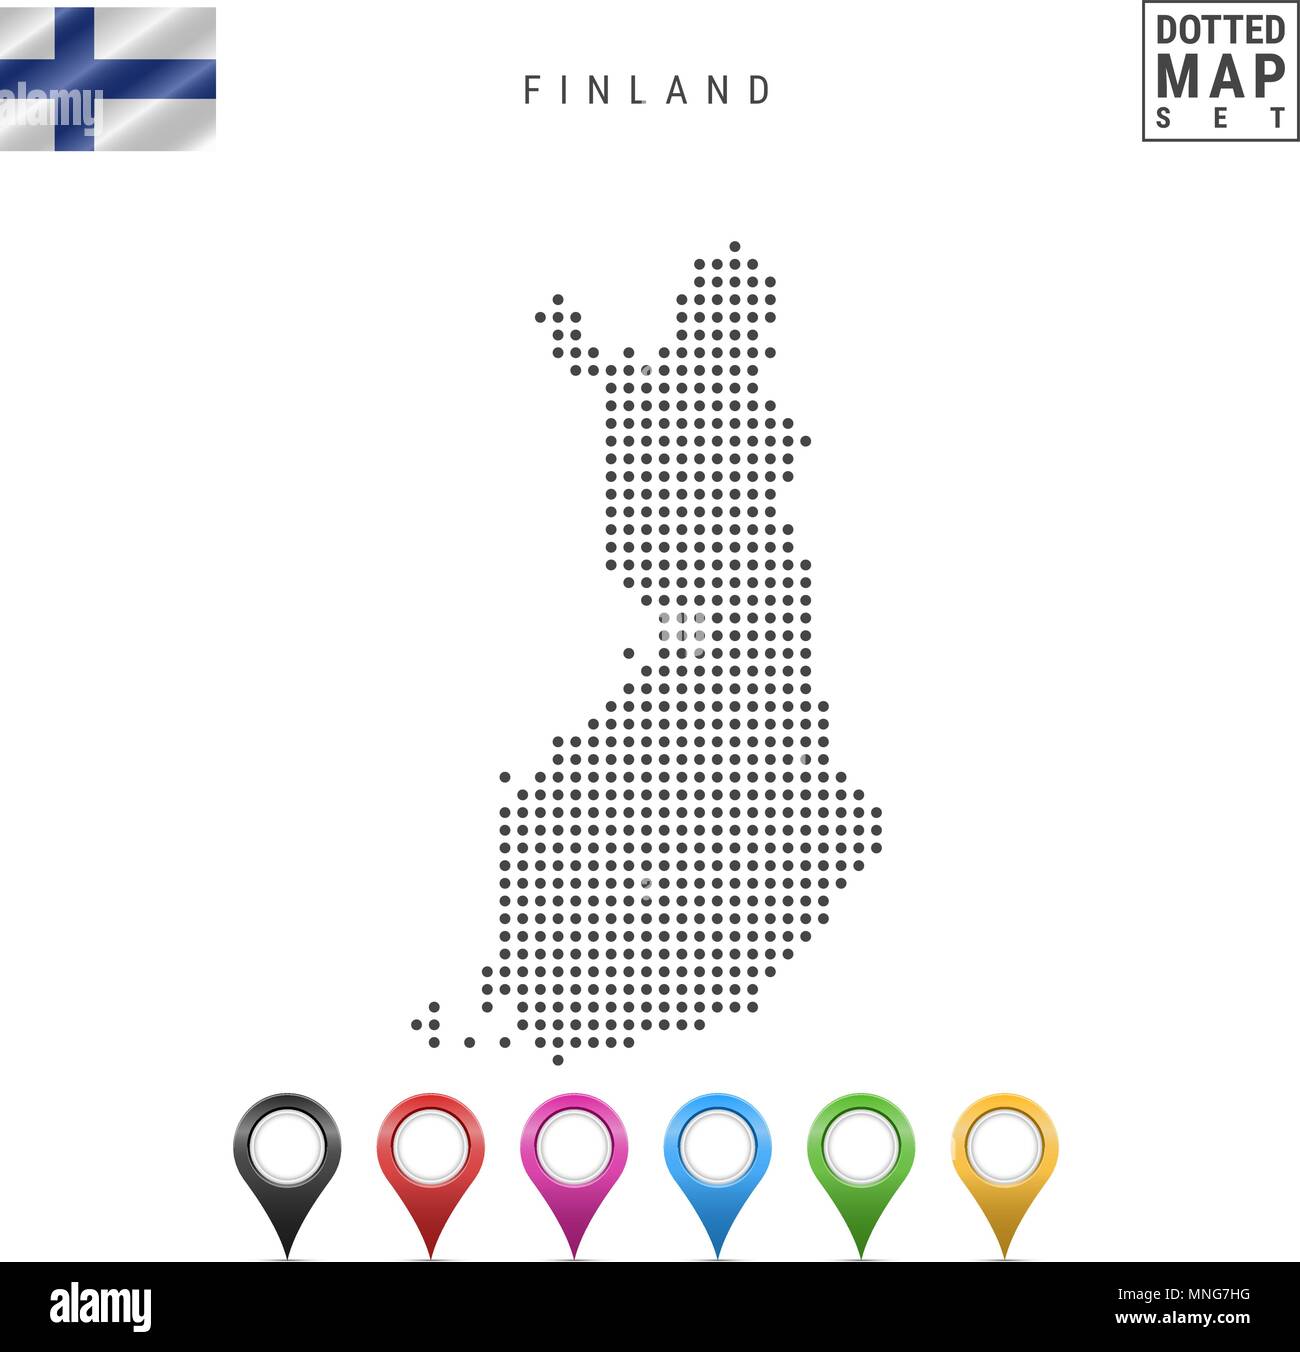 Mappa punteggiata di Finlandia. Semplice Silhouette della Finlandia. La bandiera nazionale della Finlandia. Insieme multicolore i marcatori mappa. Illustrazione di vettore isolato su Wh Illustrazione Vettoriale